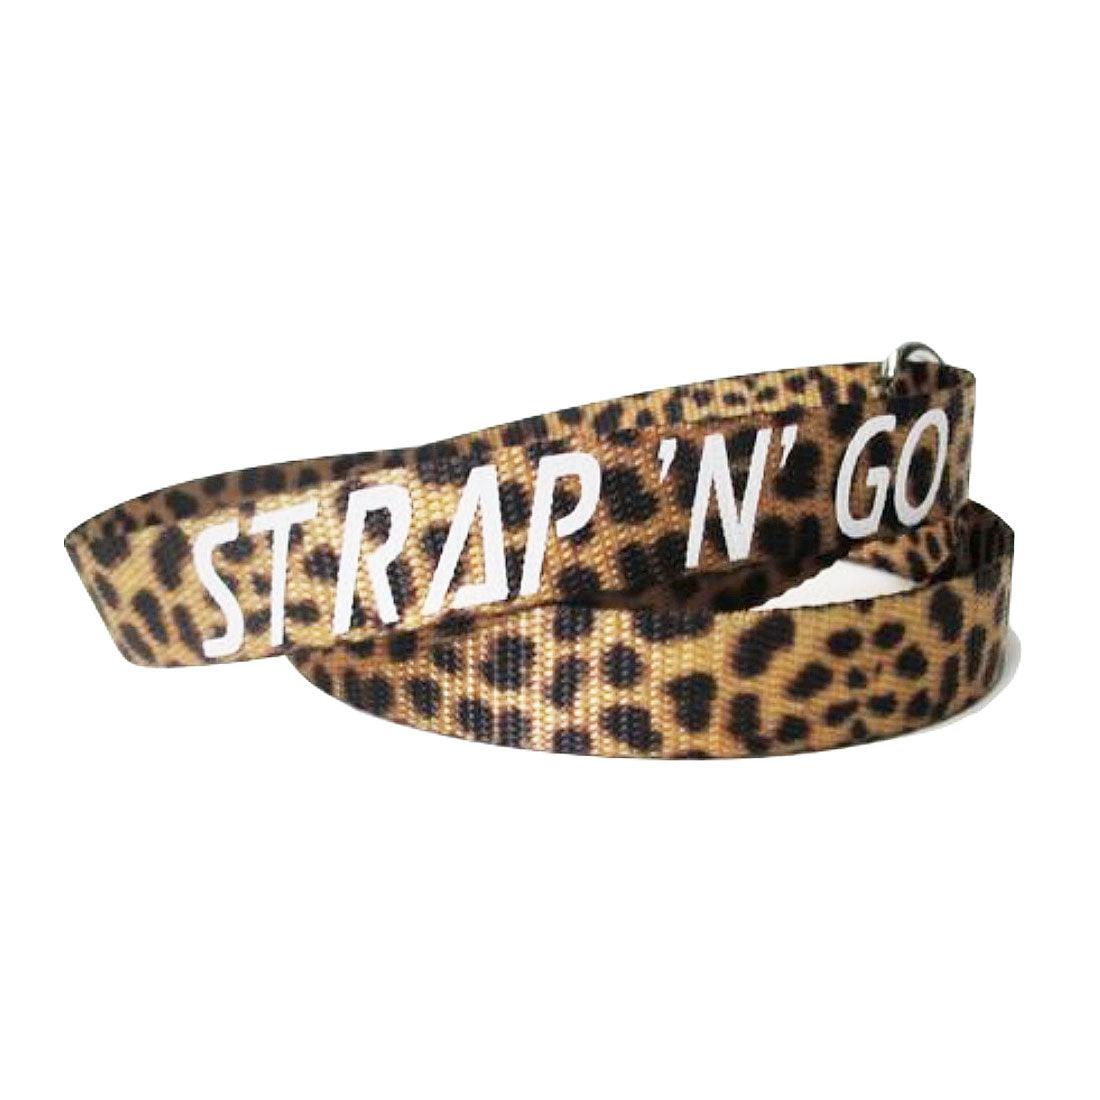 Strap N Go Skate Noose/Leash - Patterns Leopard Roller Skate Accessories